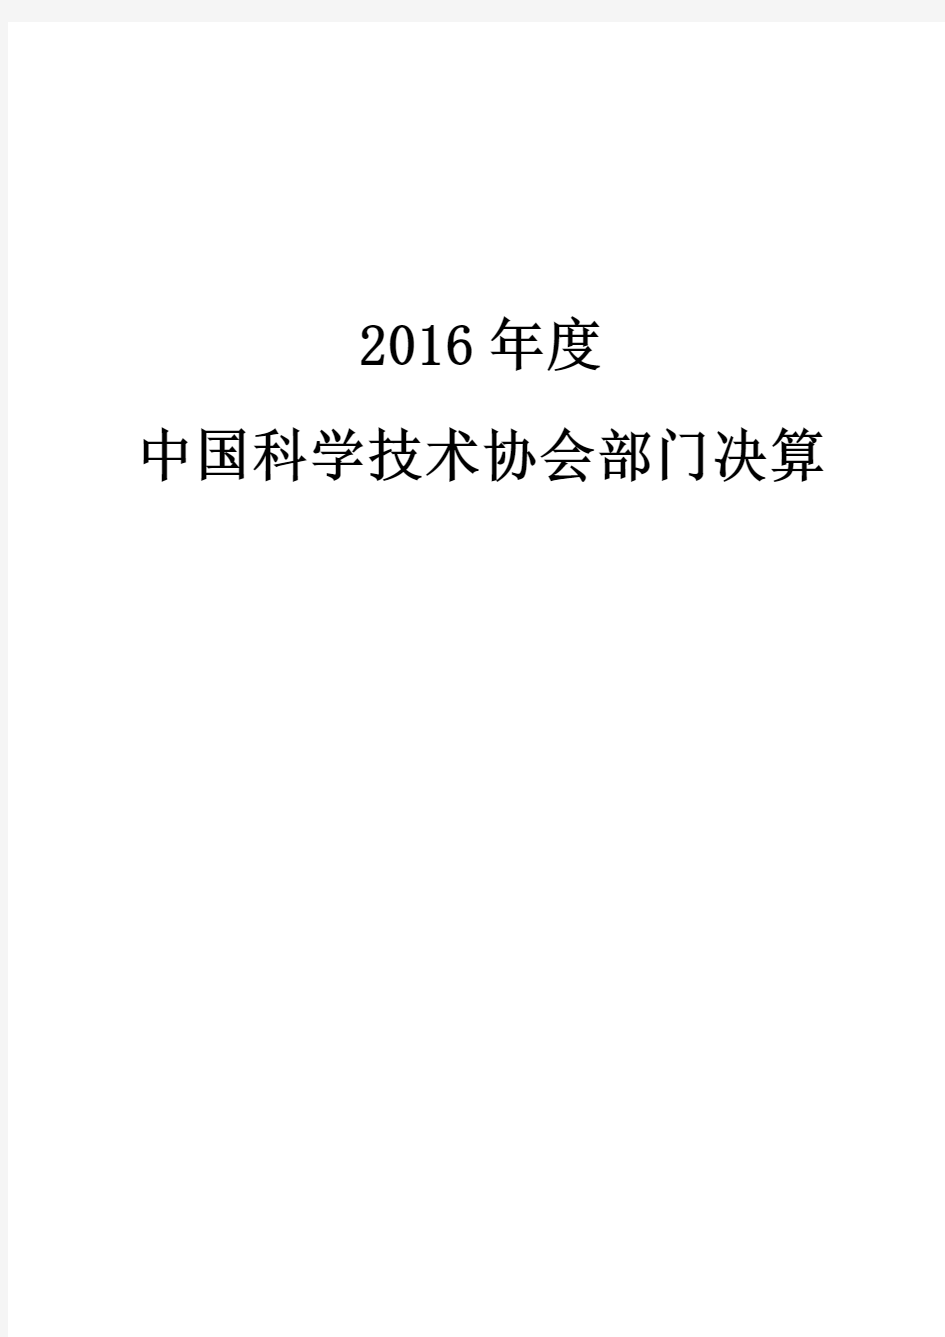 2016年中国科学技术协会部门决算